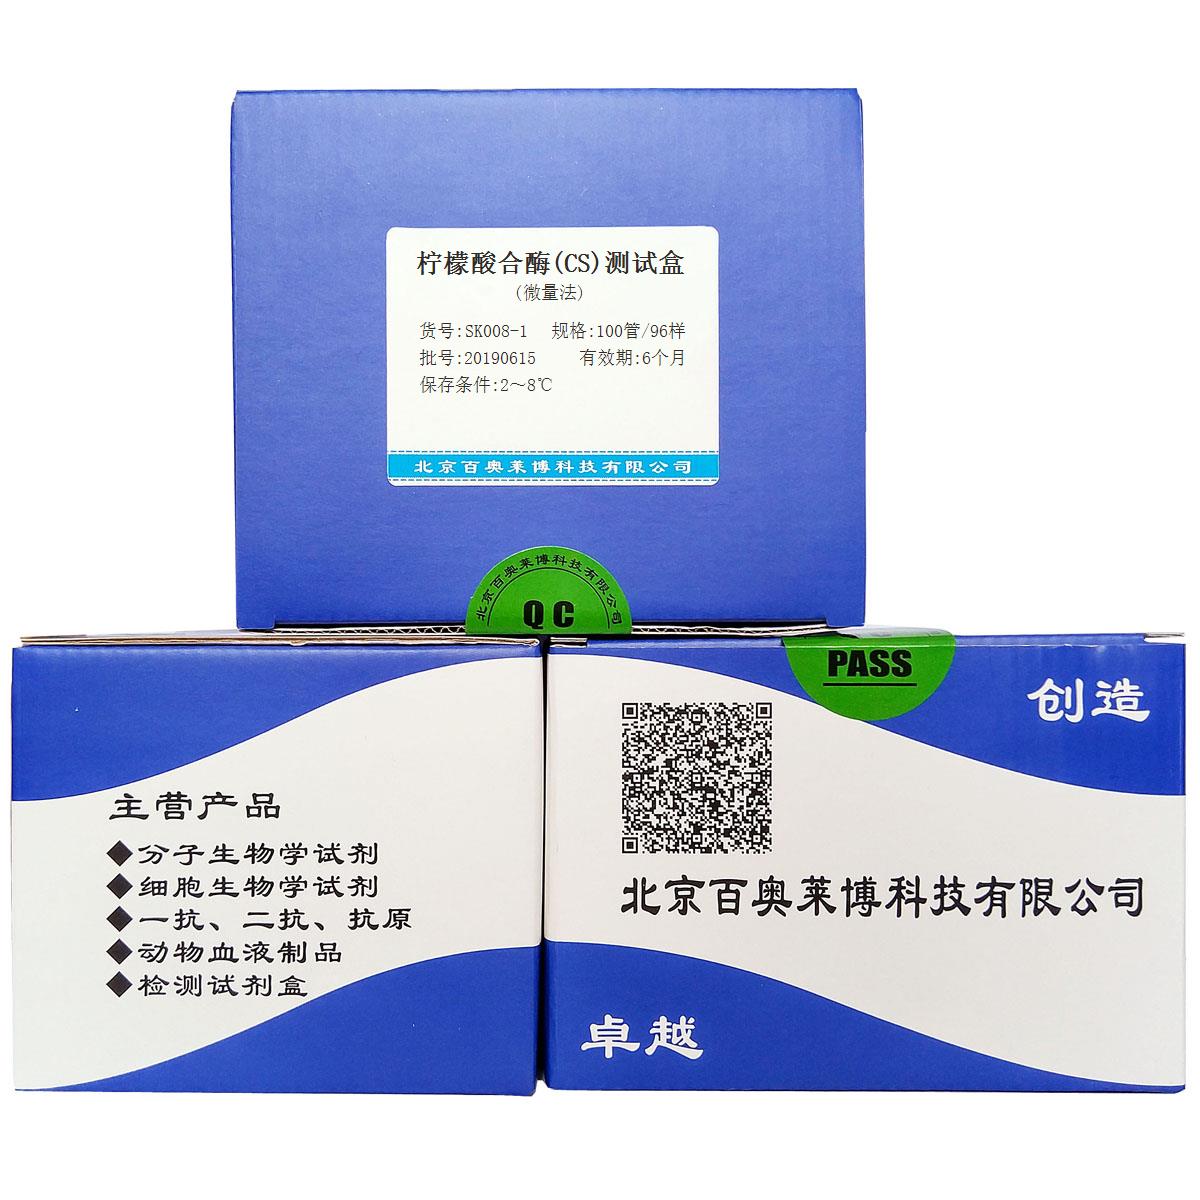 柠檬酸合酶(CS)测试盒(微量法)北京厂家